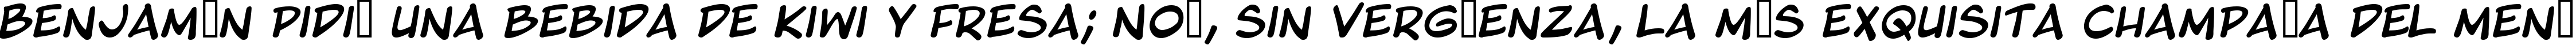 Пример написания шрифтом Blambot Pro Italic текста на испанском